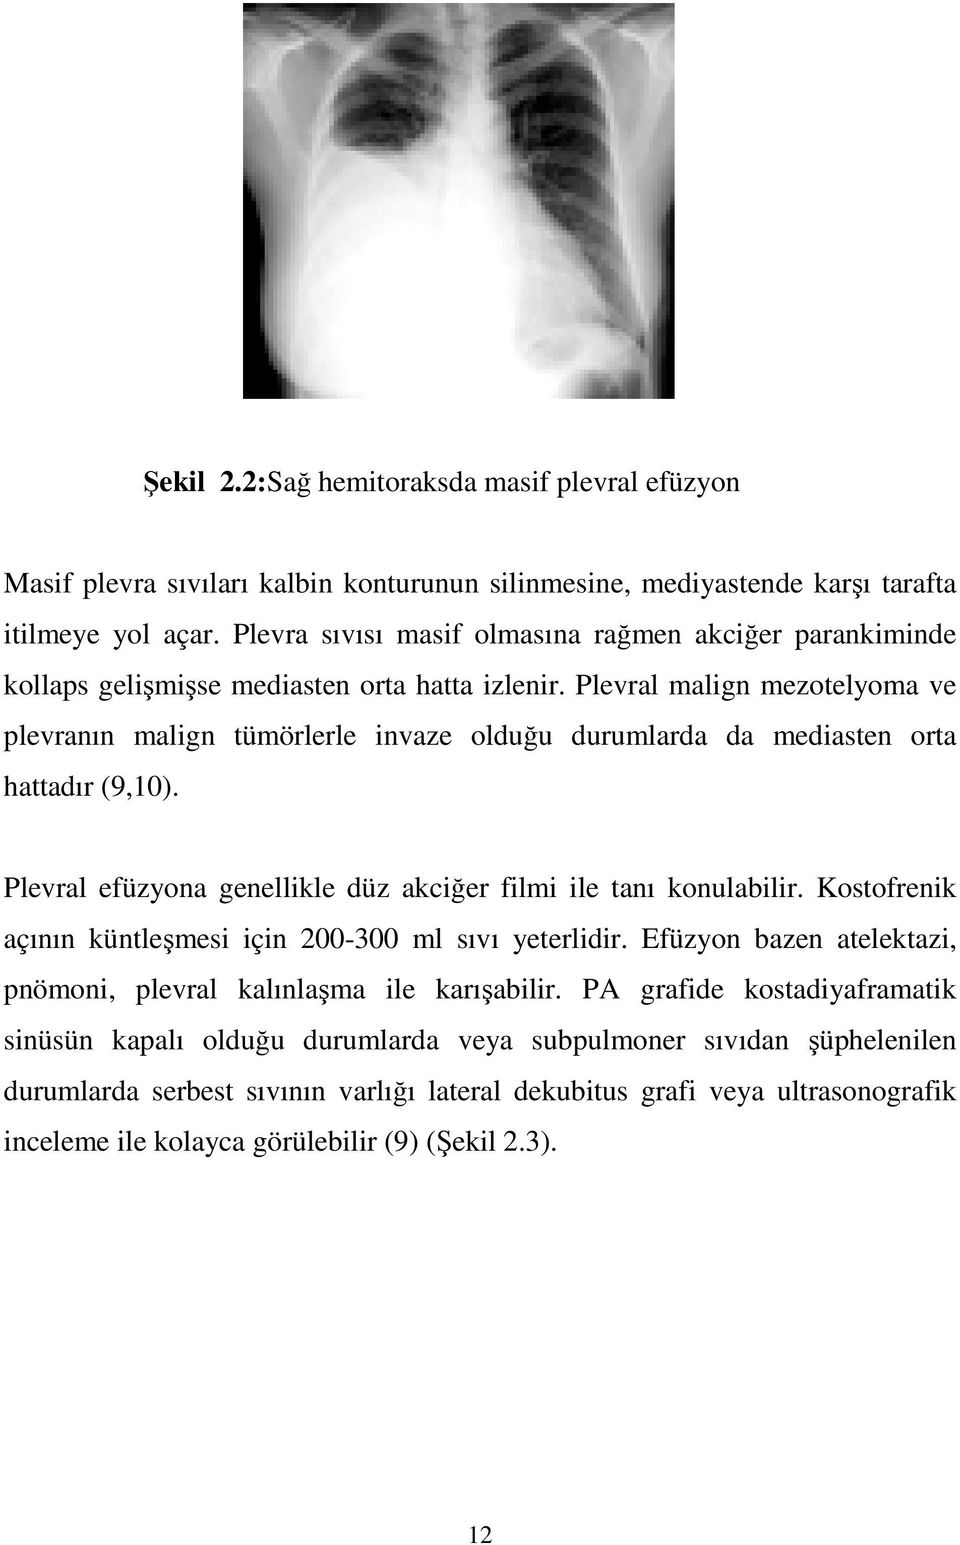 Plevral malign mezotelyoma ve plevranın malign tümörlerle invaze olduğu durumlarda da mediasten orta hattadır (9,10). Plevral efüzyona genellikle düz akciğer filmi ile tanı konulabilir.